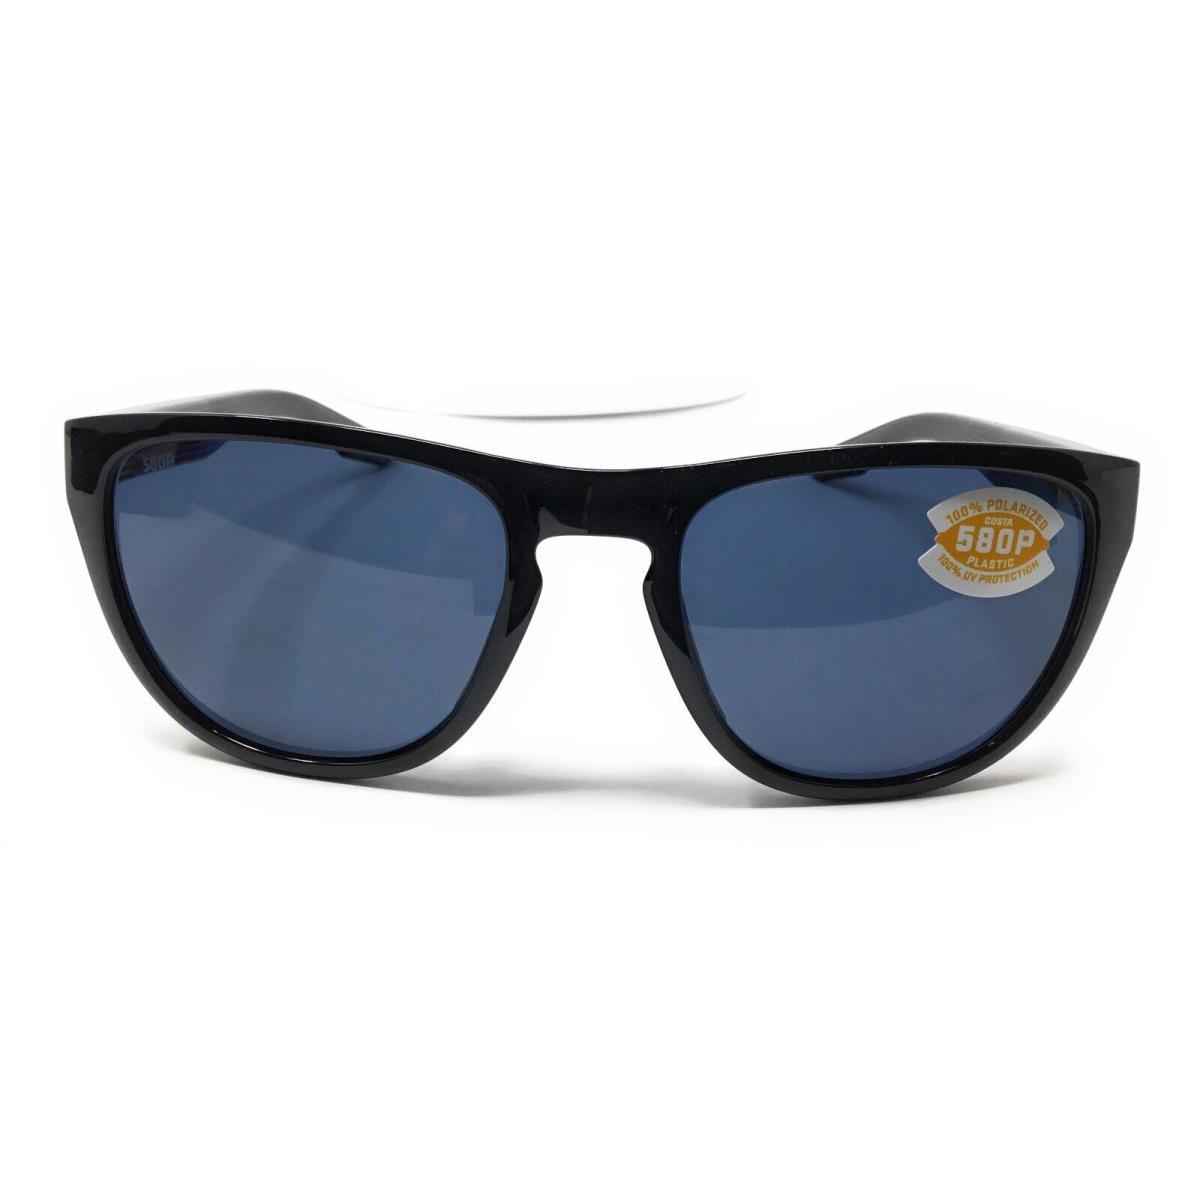 Costa Del Mar Irie Mens Gray Polarized Lens Sunglasses 6S9082 908203 55-20 - Frame: Black, Lens: Gray